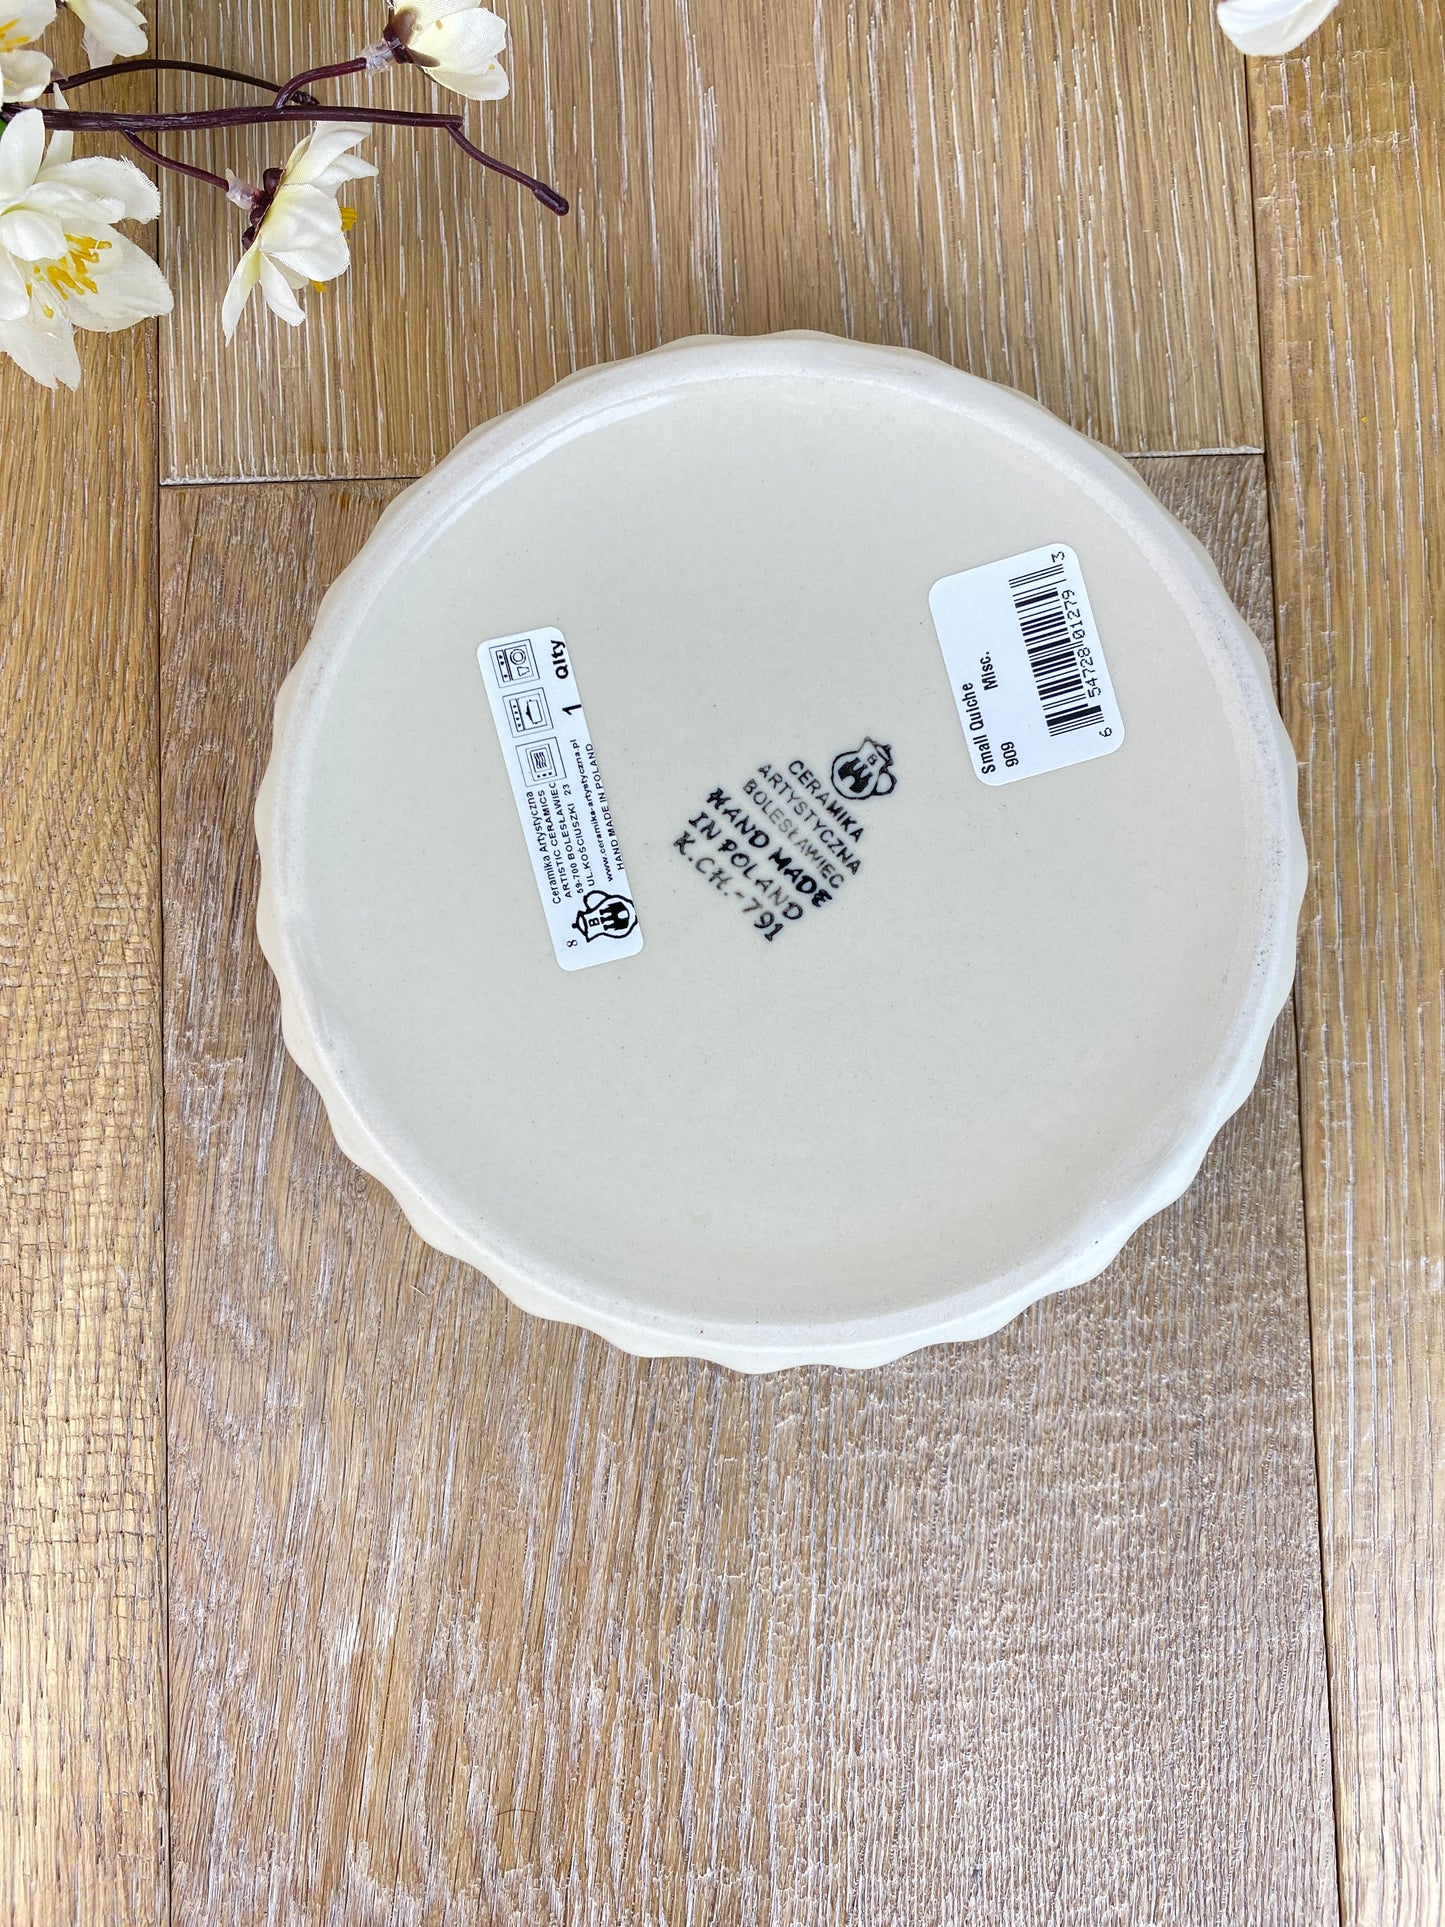 Small Quiche / Ruffled Baking Dish - Shape 909 - Pattern 2715